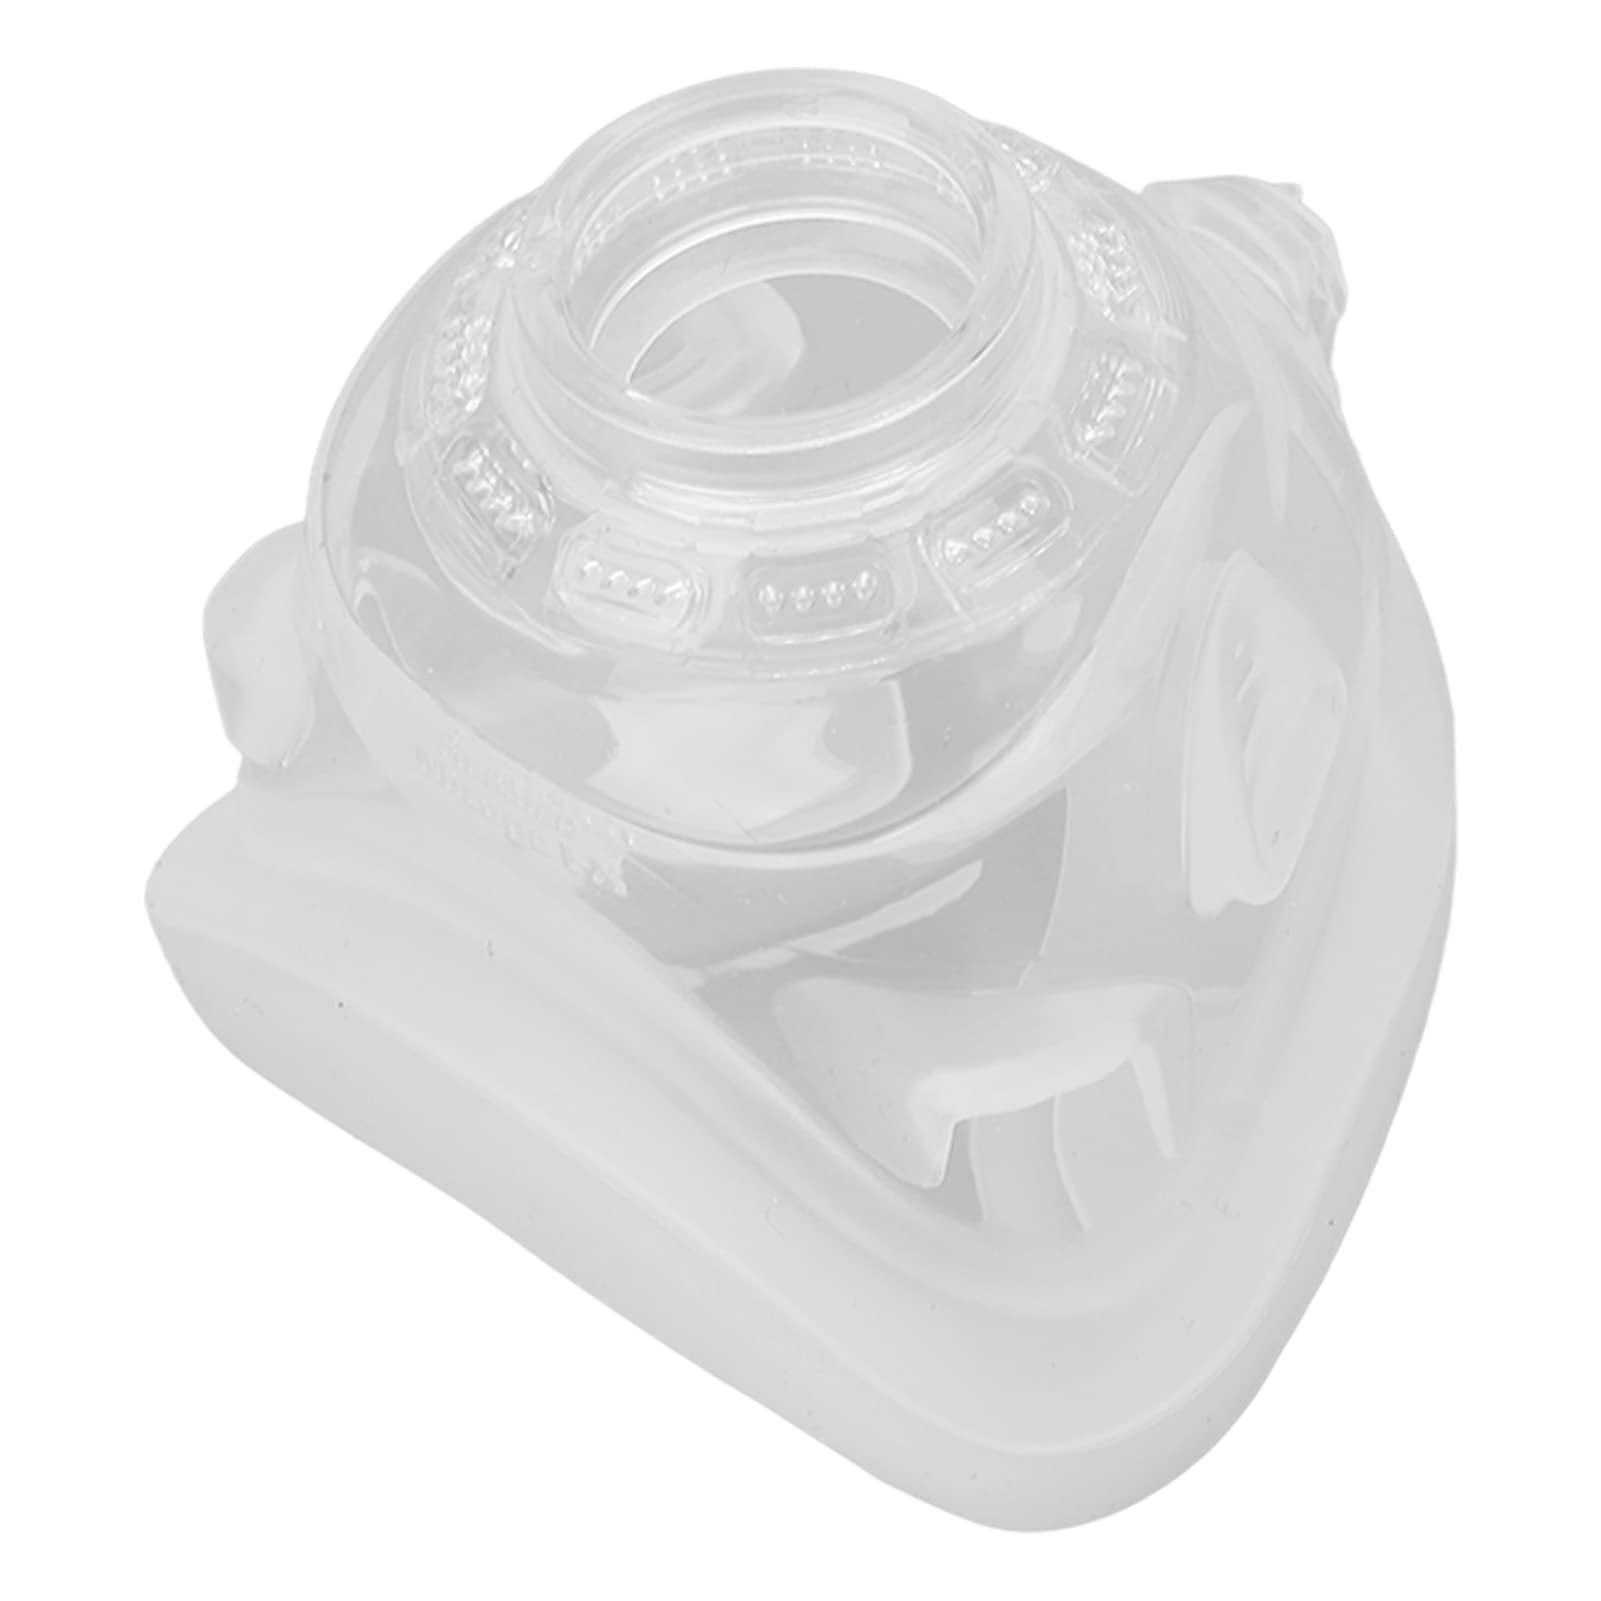 Ersatz-Nasenkissen, Ersatz-CPAP-Nasenmasken-Kissenzubehör, Kompatibel mit Mirage FX Nasenschutz, S9 S10(Standard)